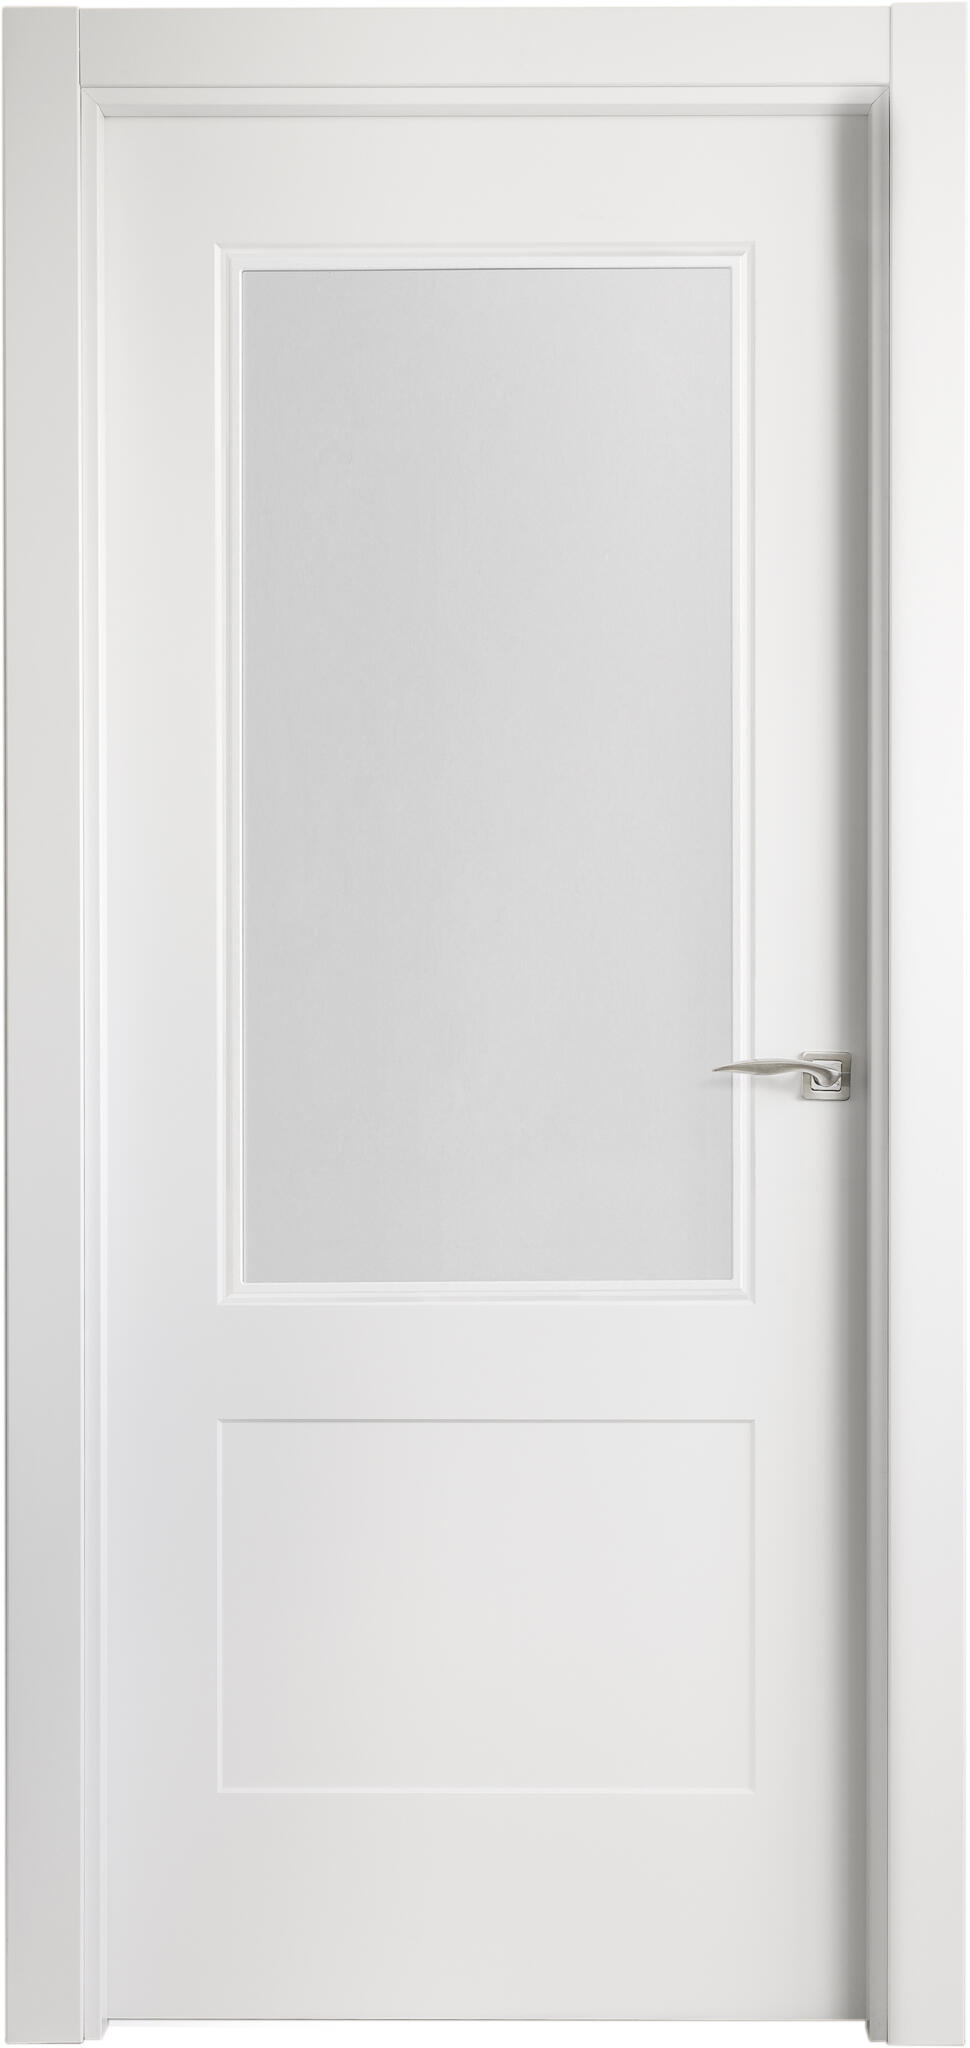 Puerta atlanta plus blanco apertura izquierda con cristal de 9x92,5cm